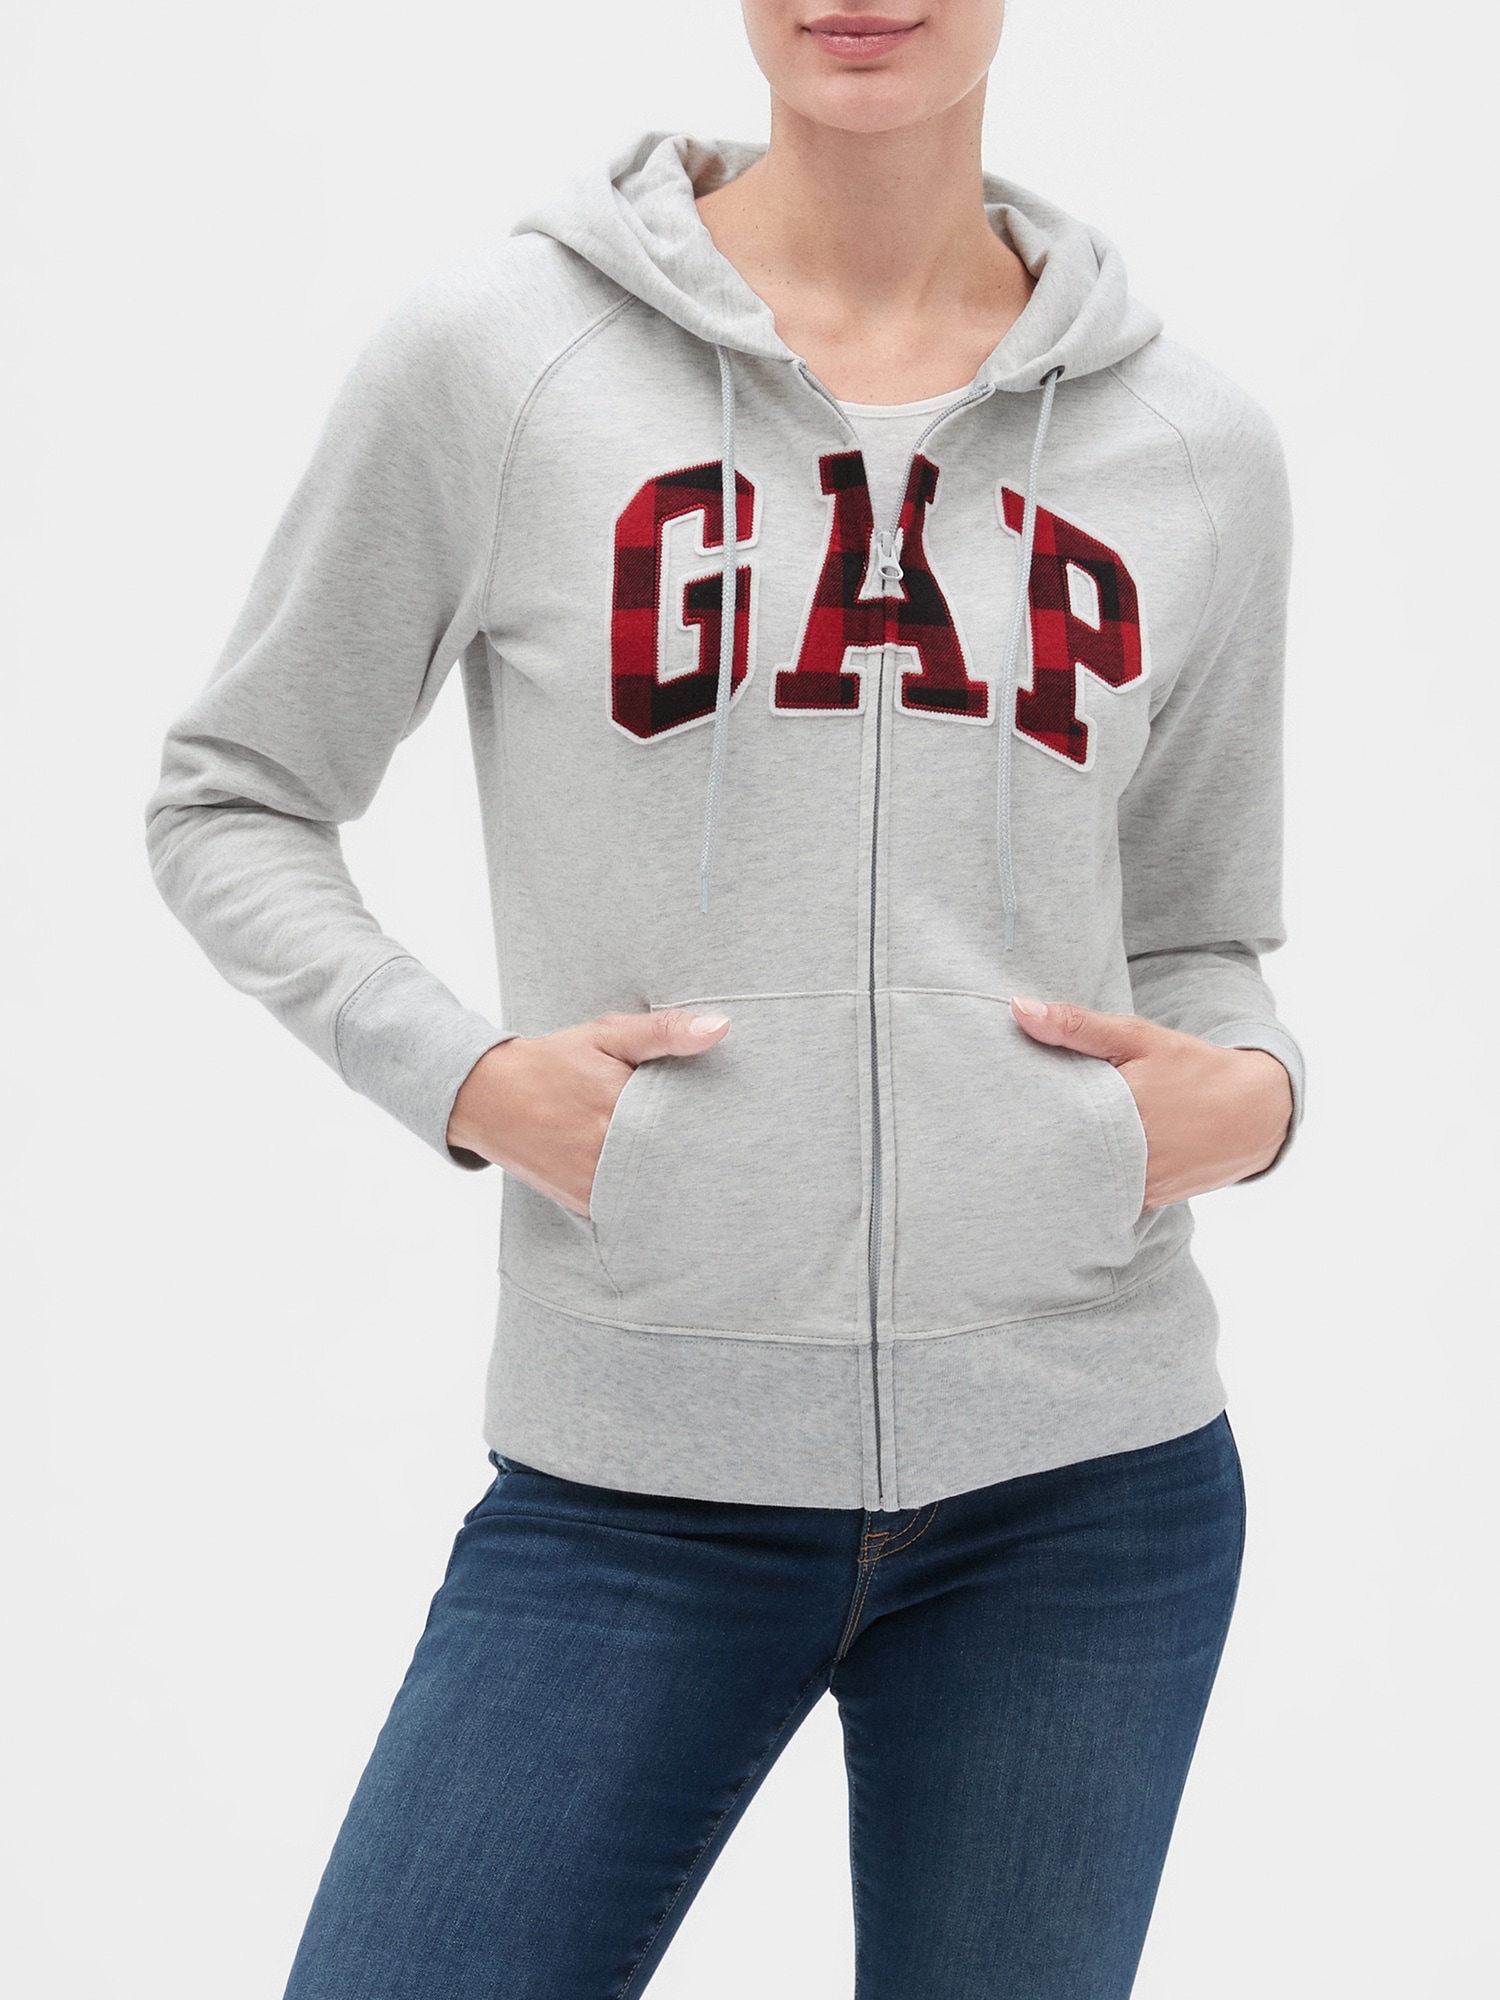 gap hoodie womens canada